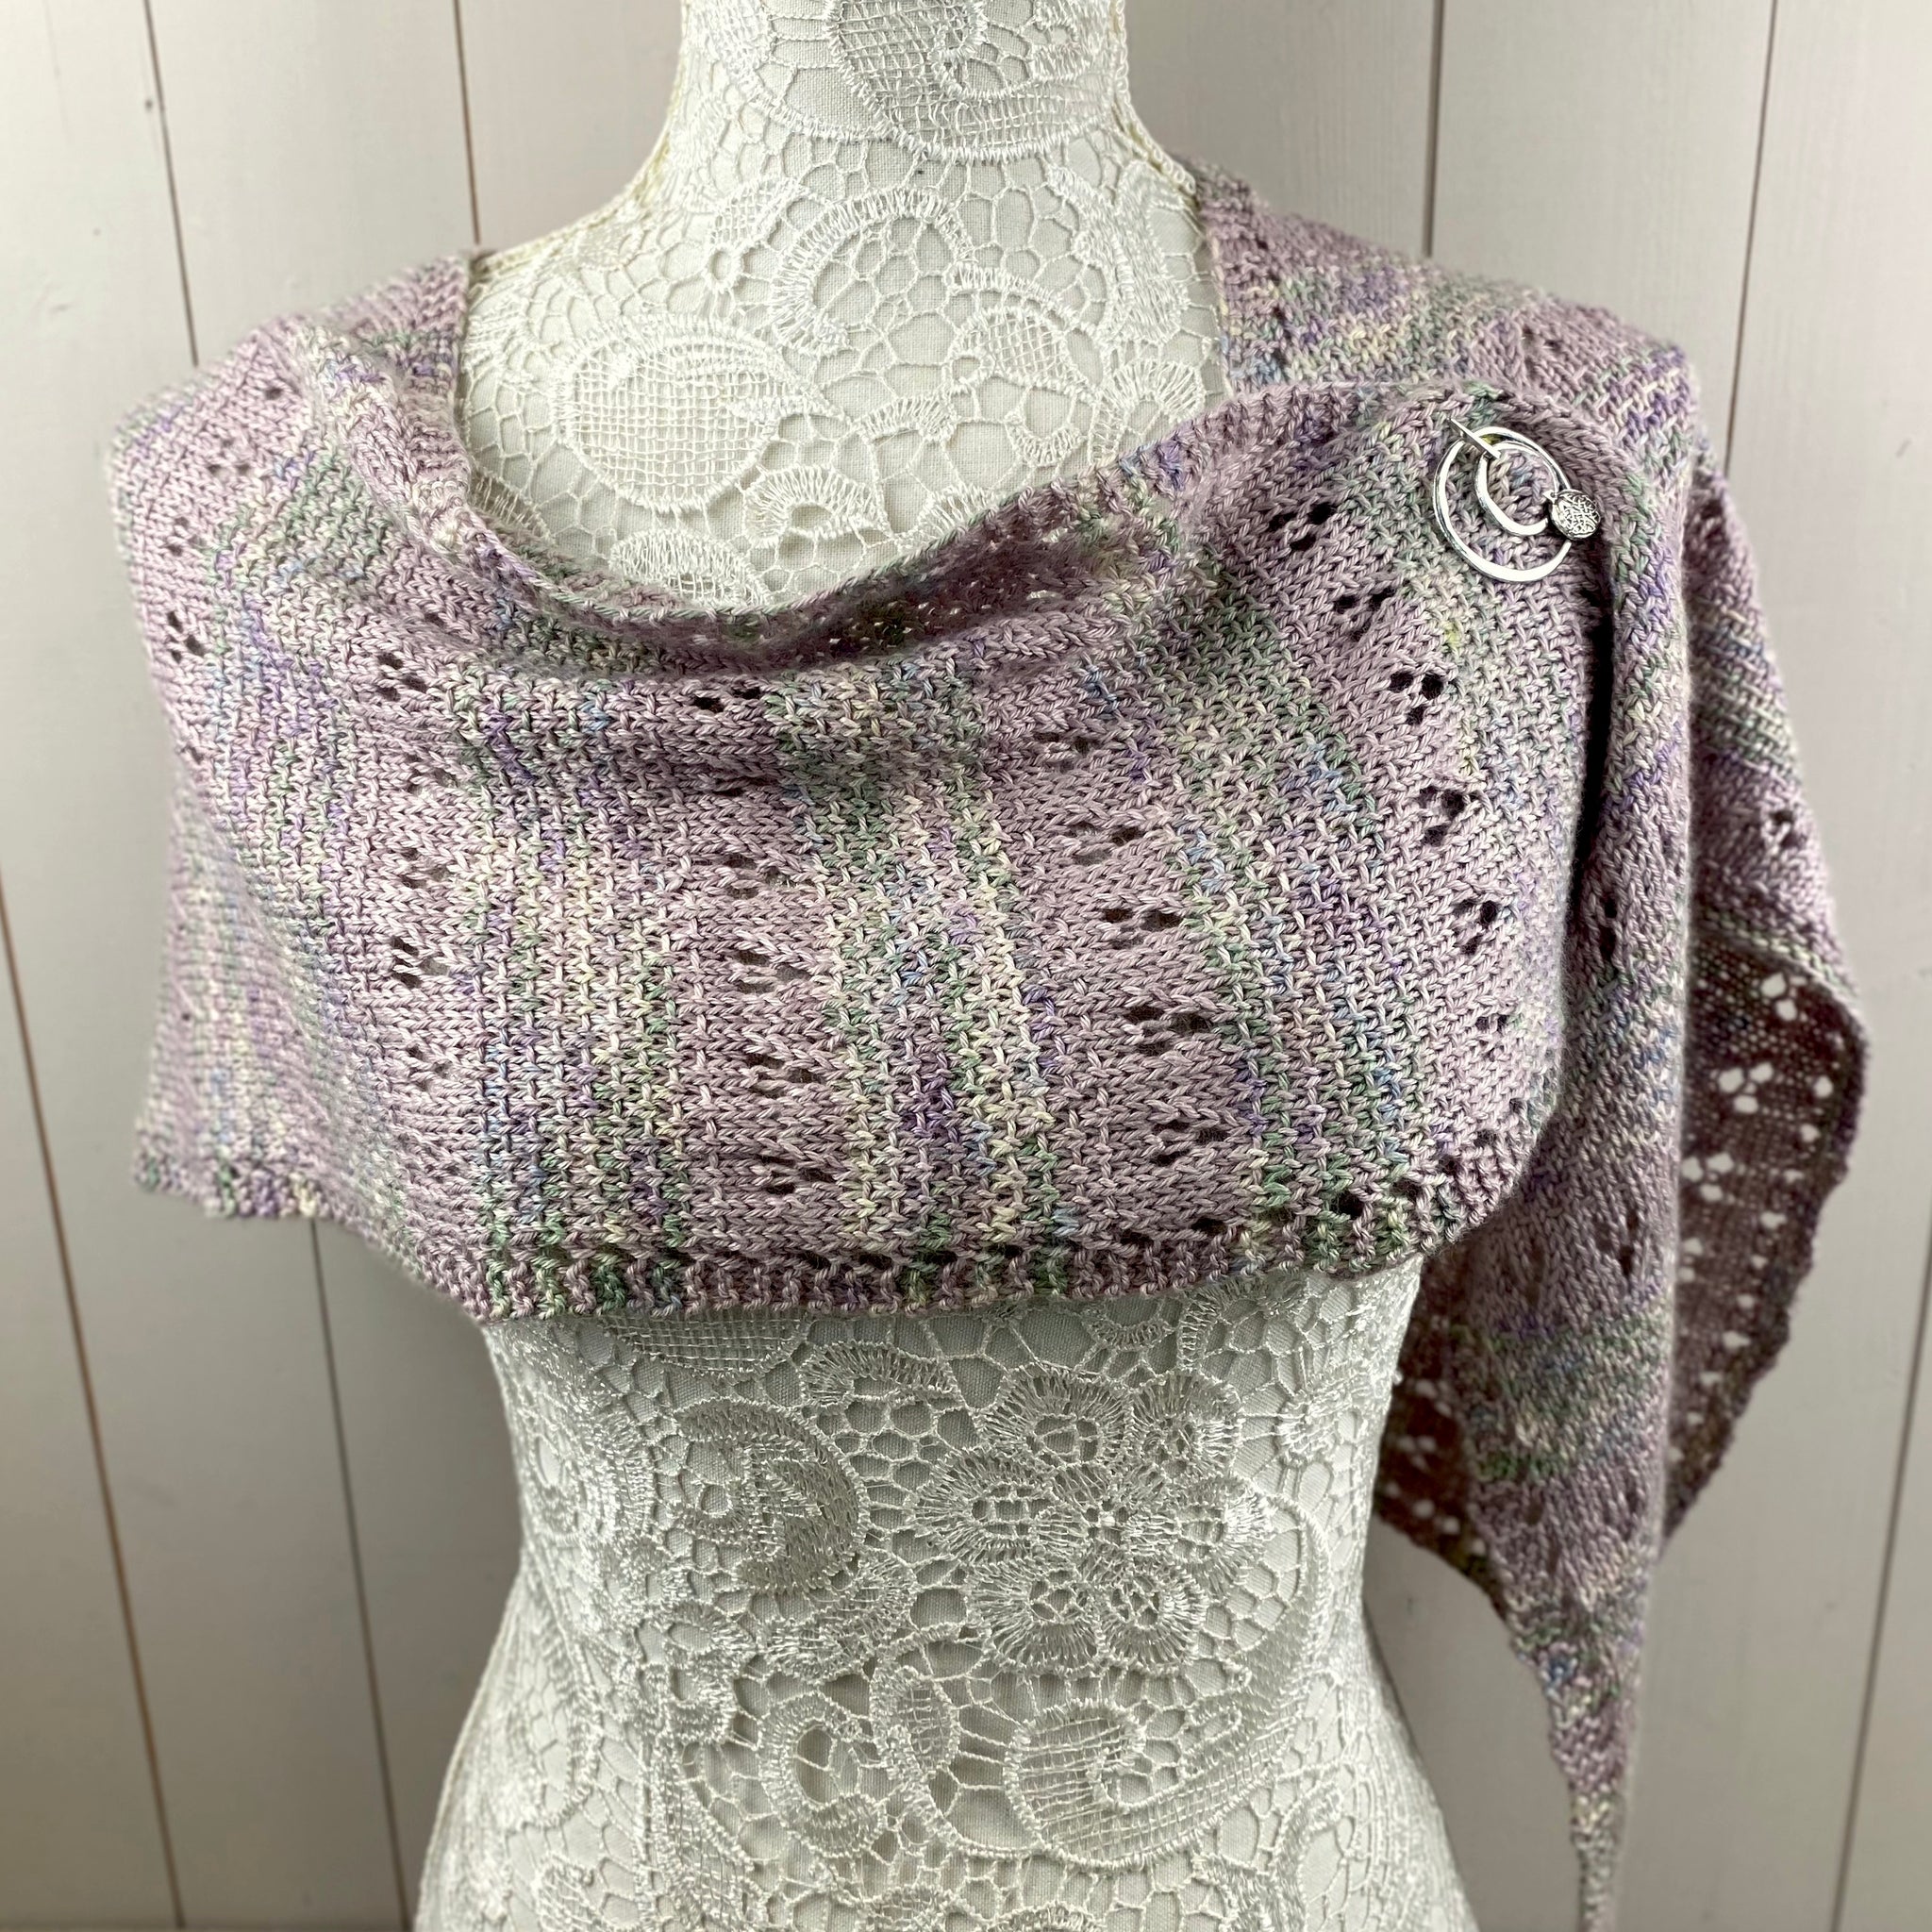 Linen & Lace Shawl Knitting Kit